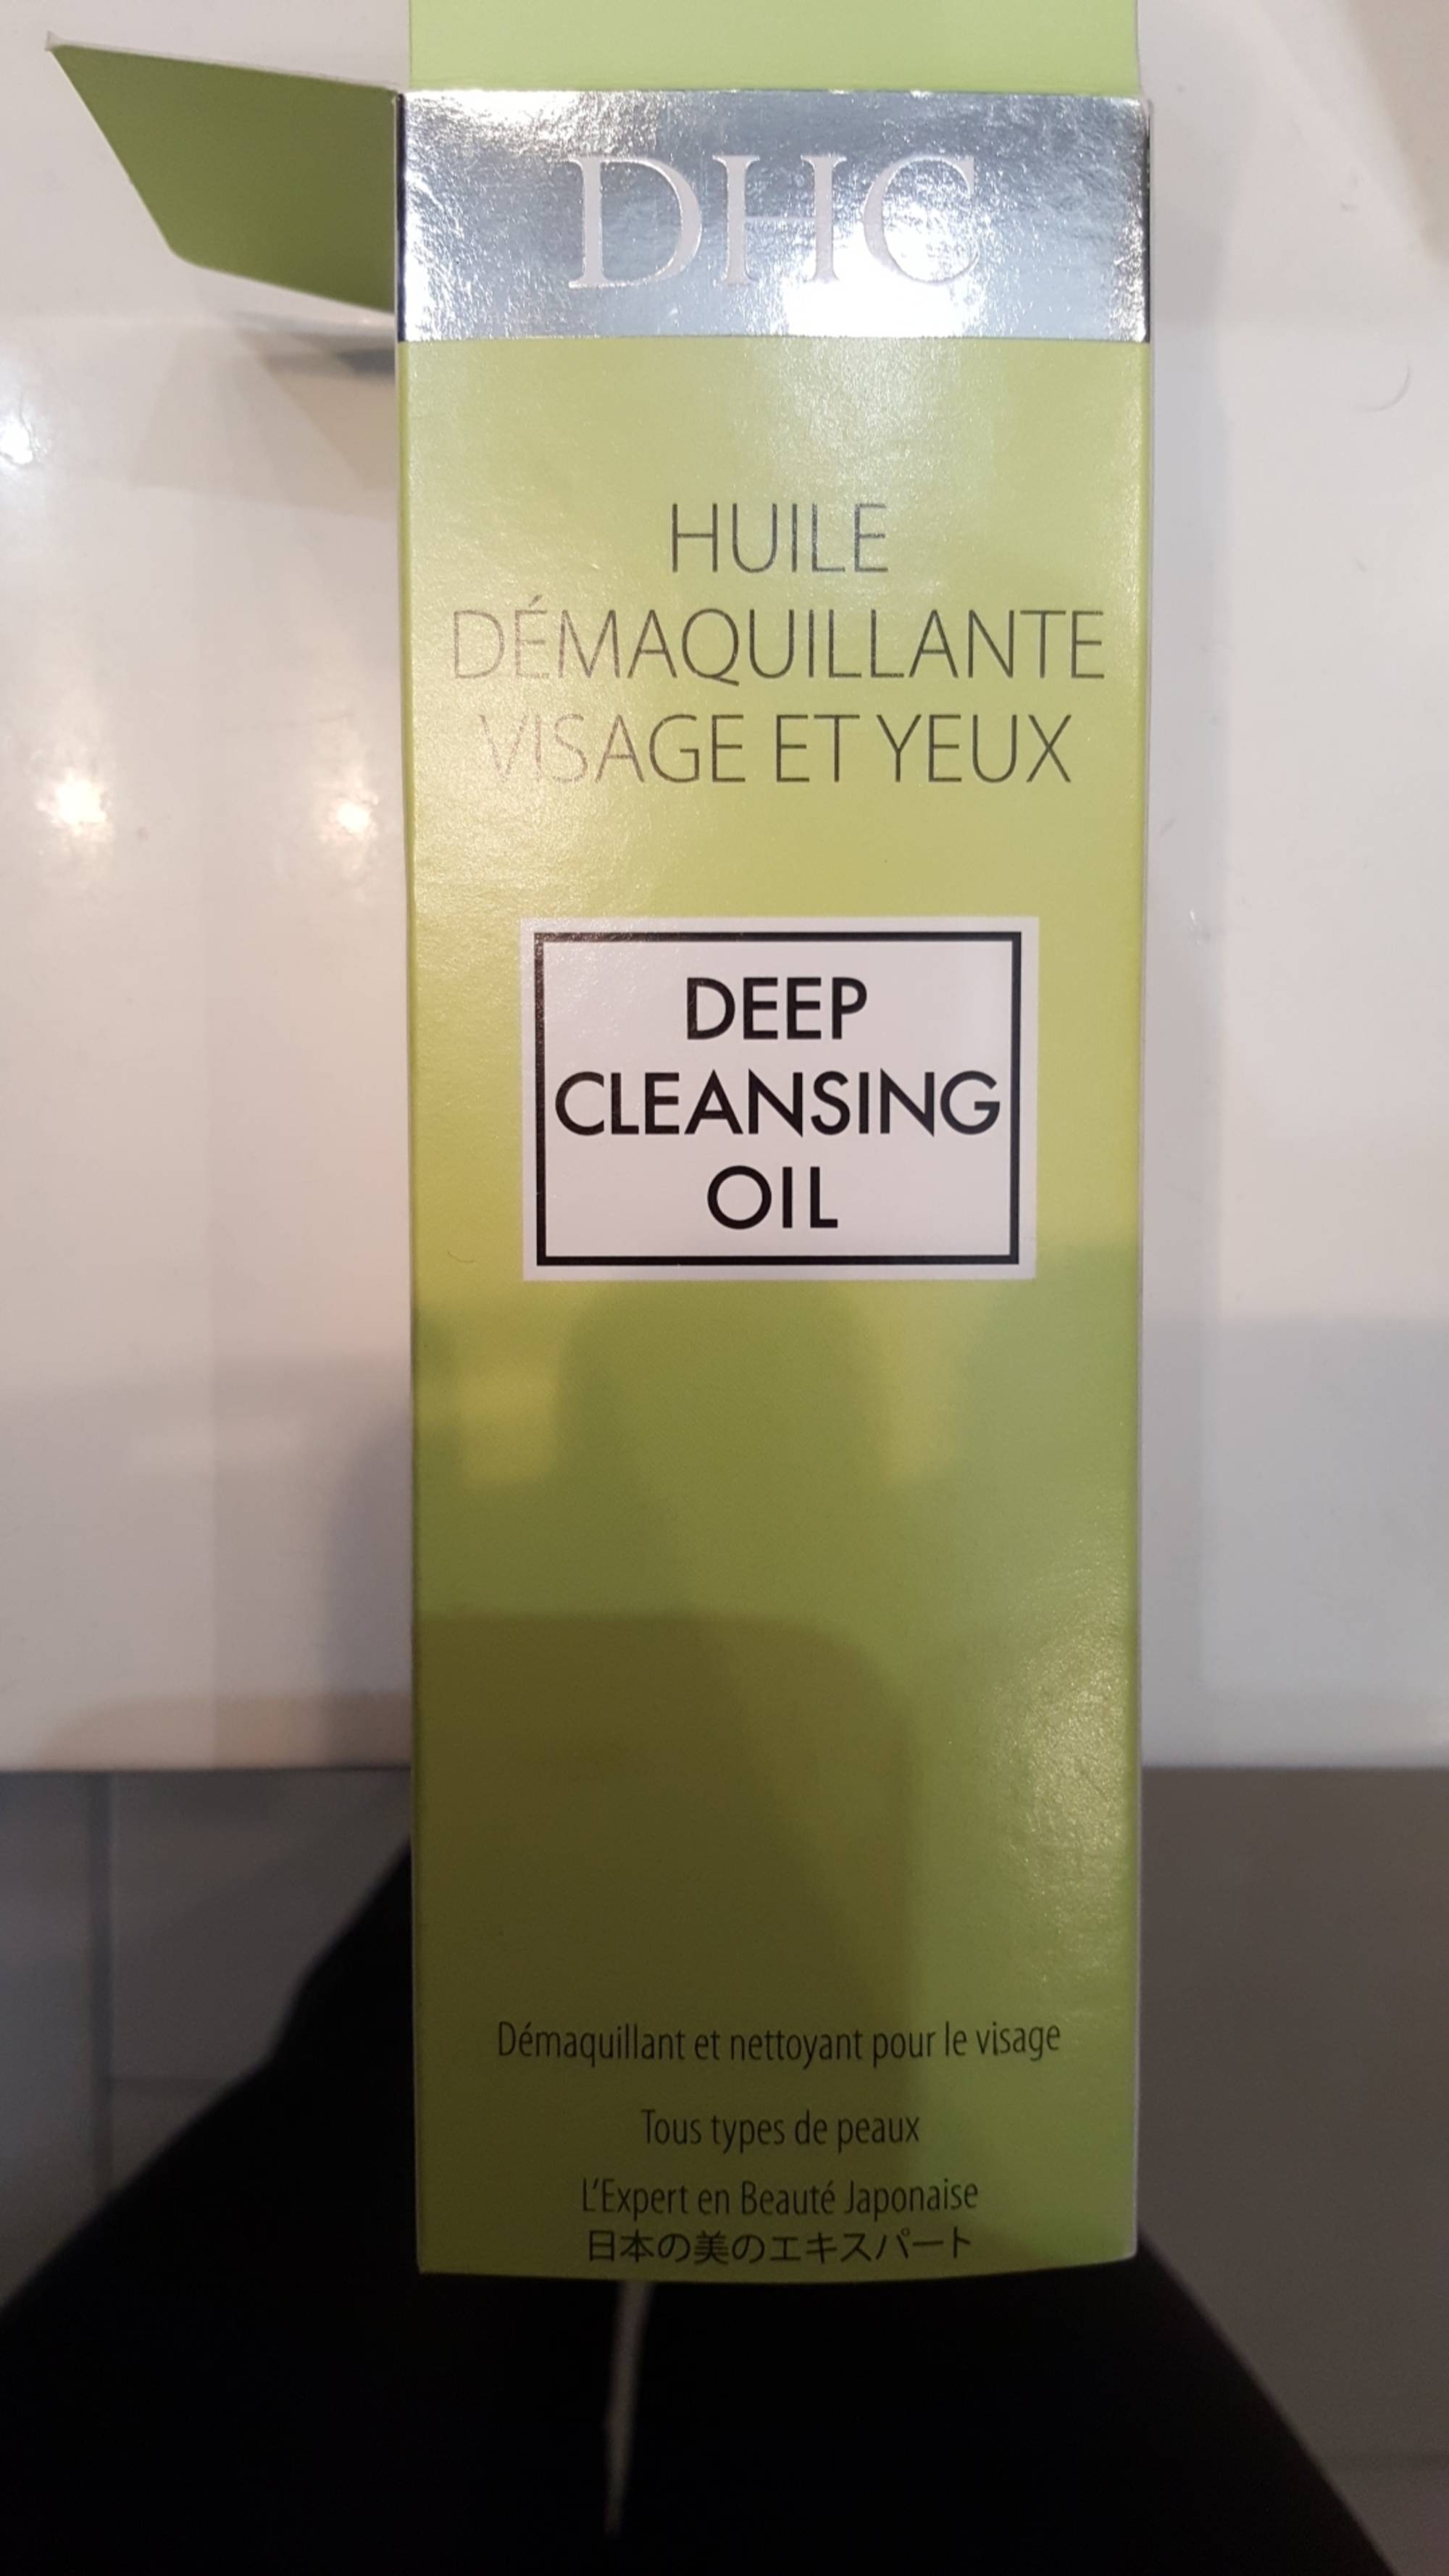 DHC - Deep cleansing oil - Démaquillante visage et yeux